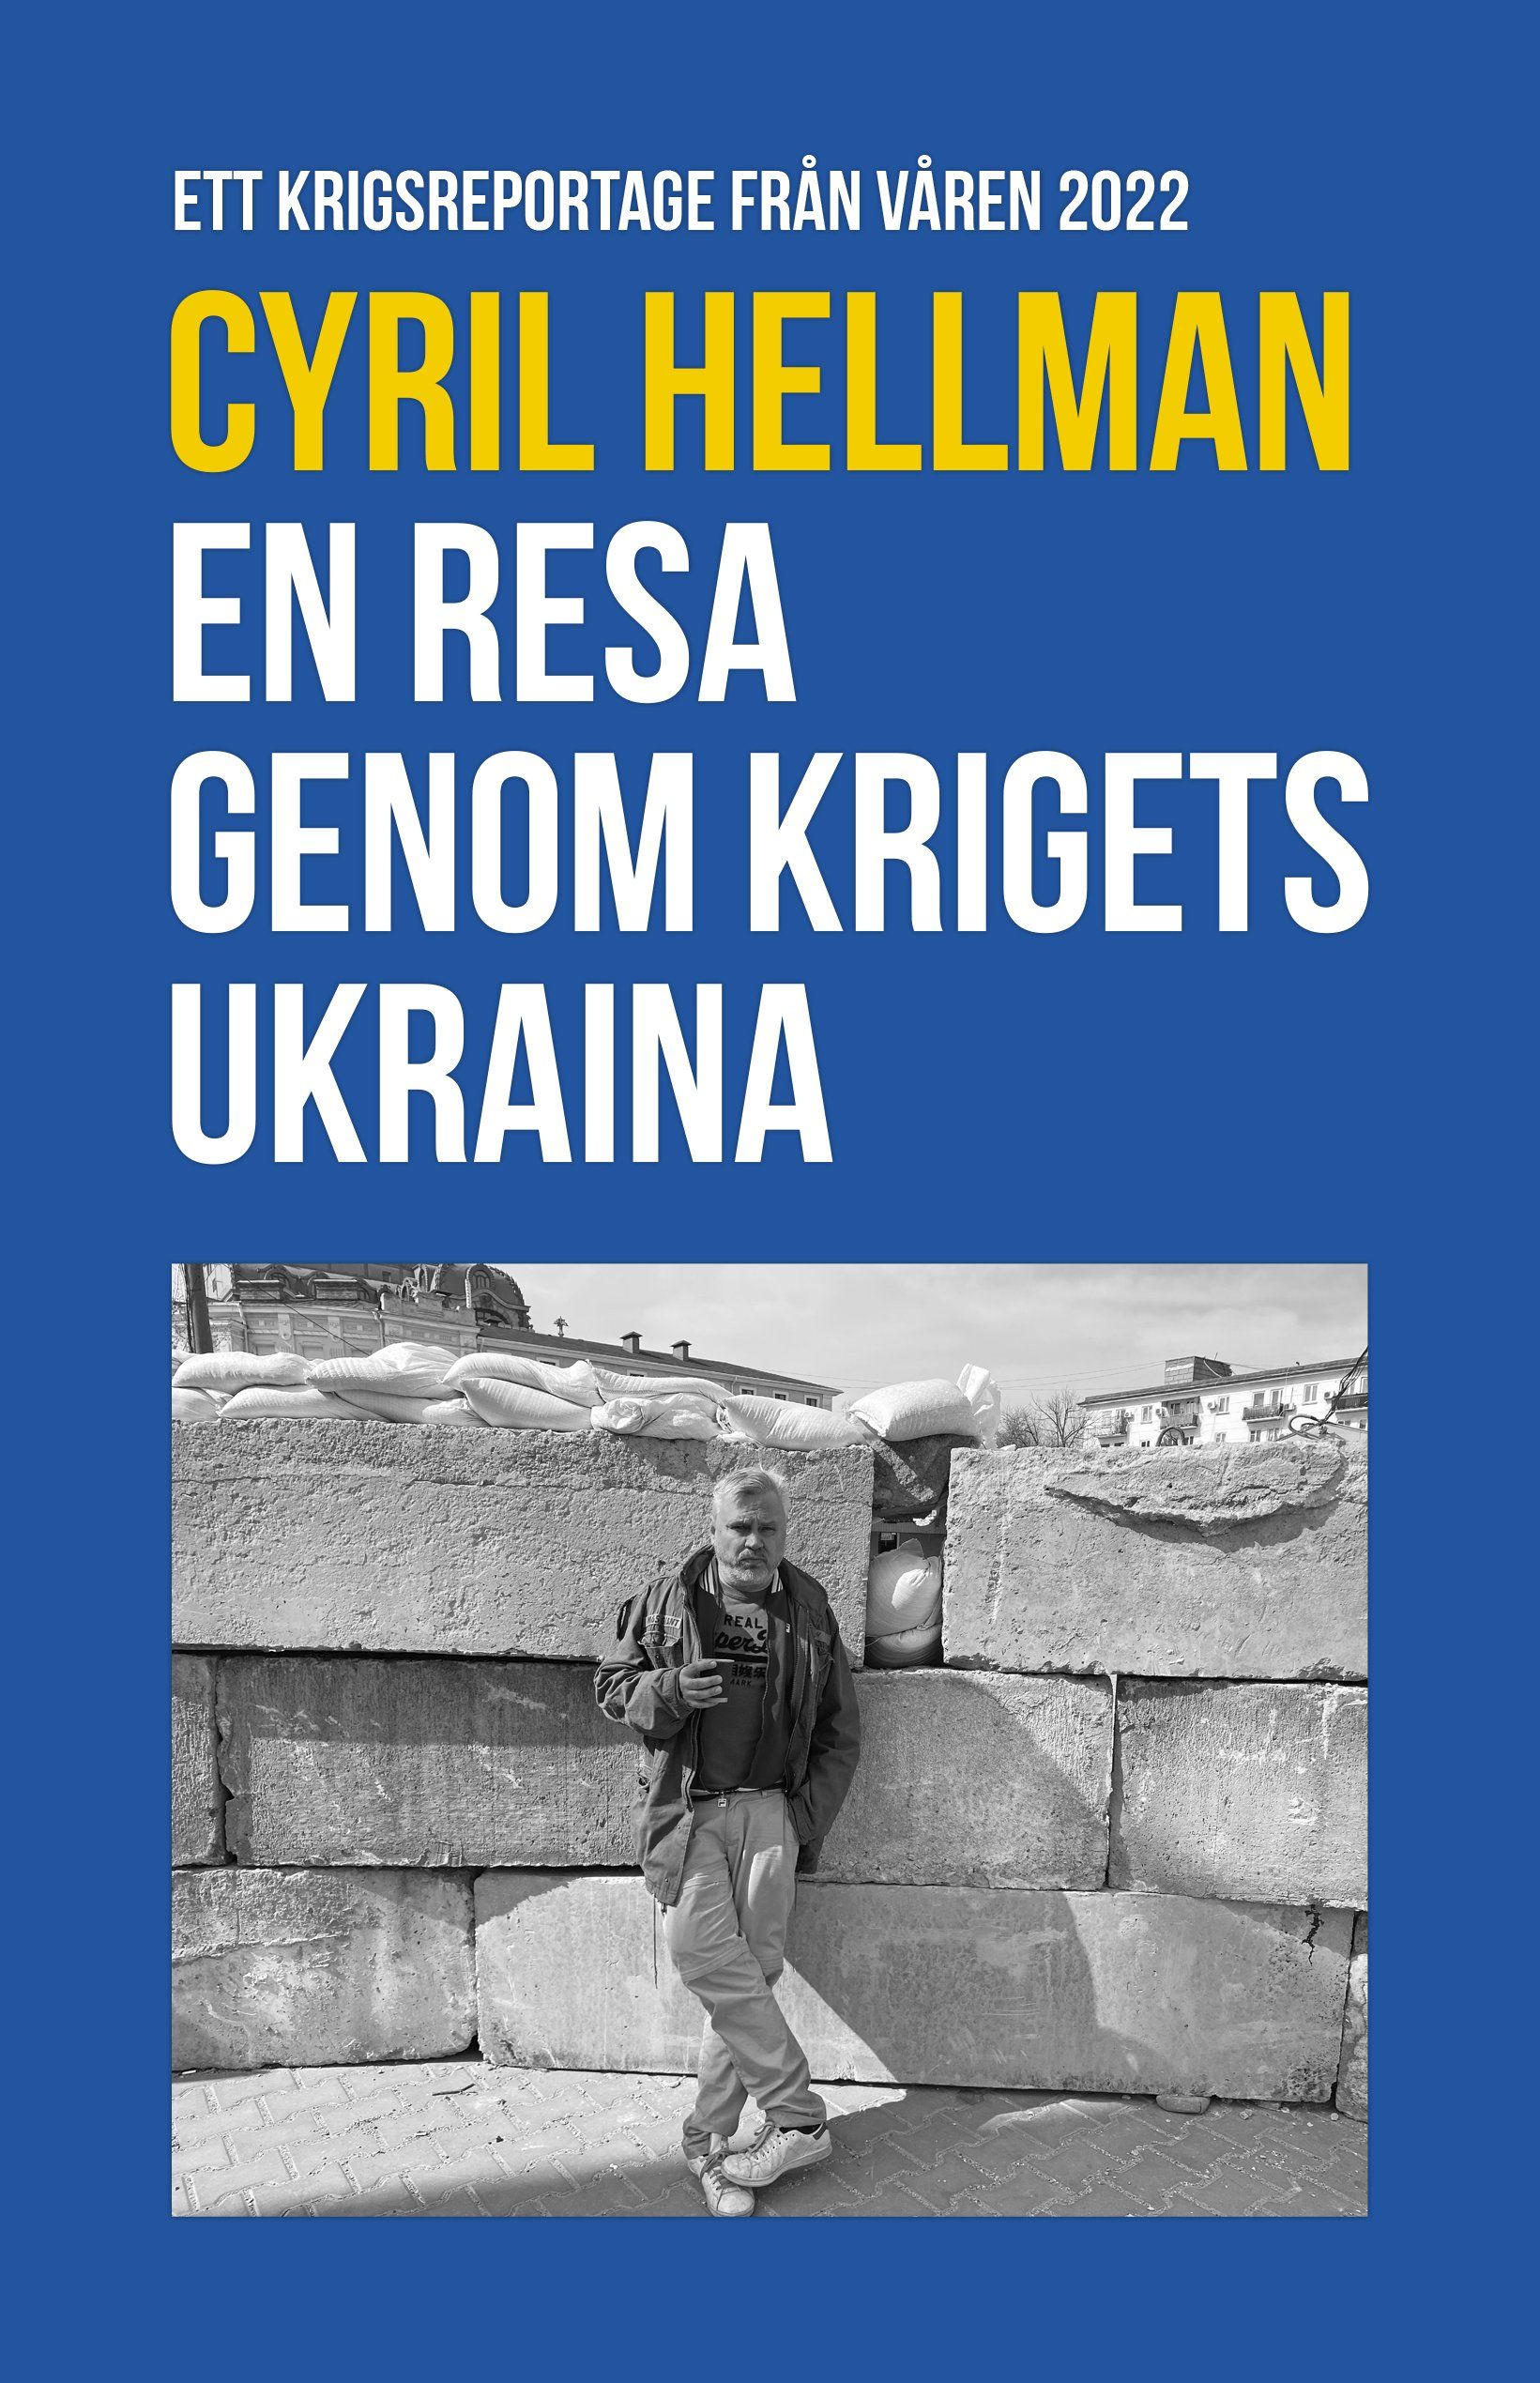 En resa genom krigets Ukraina är skriven av Cyril Hellman på Stevali Bokförlag.